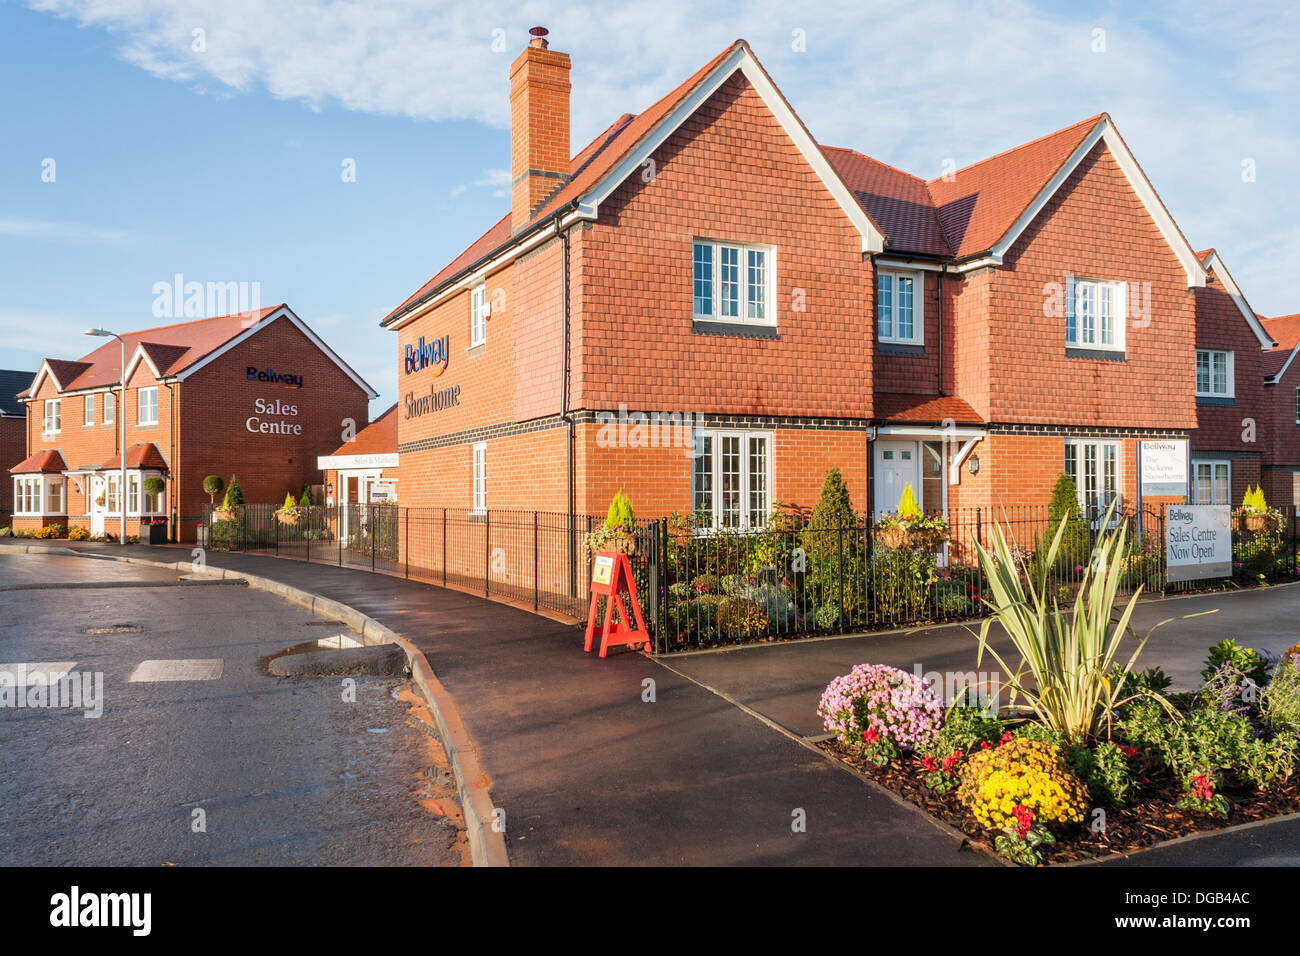 Bellway zeigen nach Hause und sales Center in einer Neubausiedlung Haus bauen im Jahr 2013. Reading, Berkshire, Südost-England, GB, UK. Stockfoto